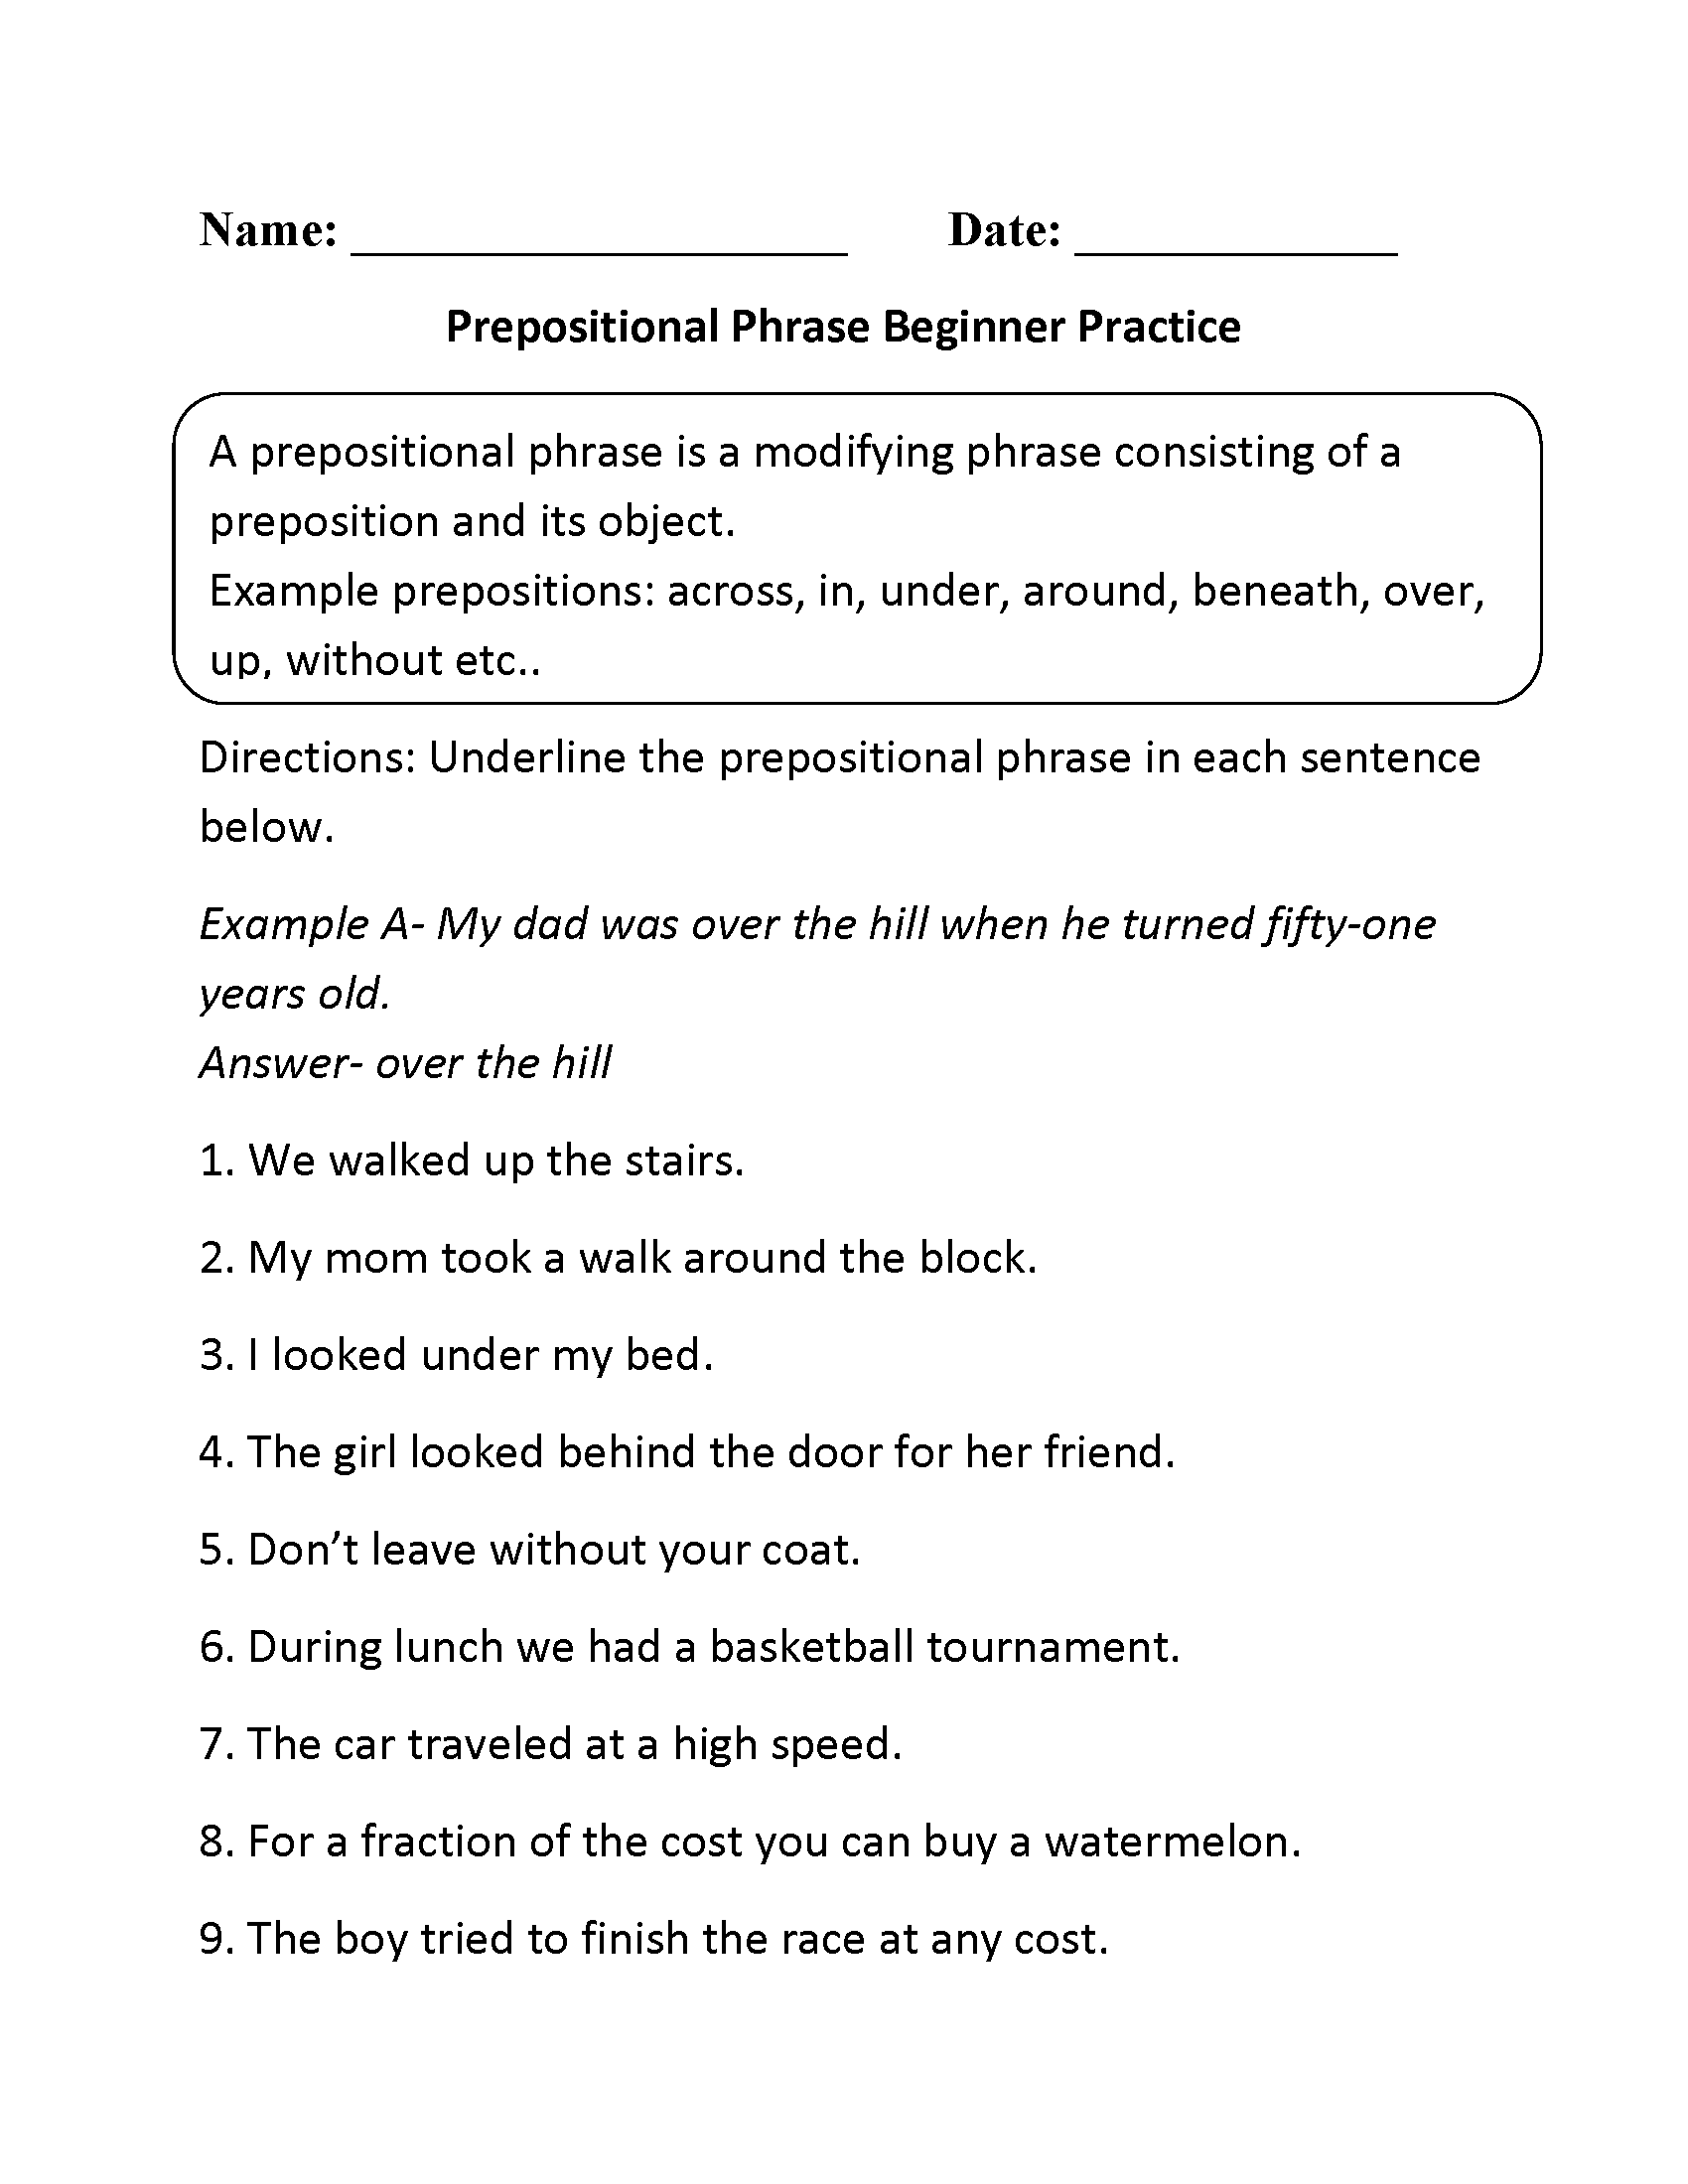 Prepositional Phrases Worksheets | Prepostional Phrase Beginner